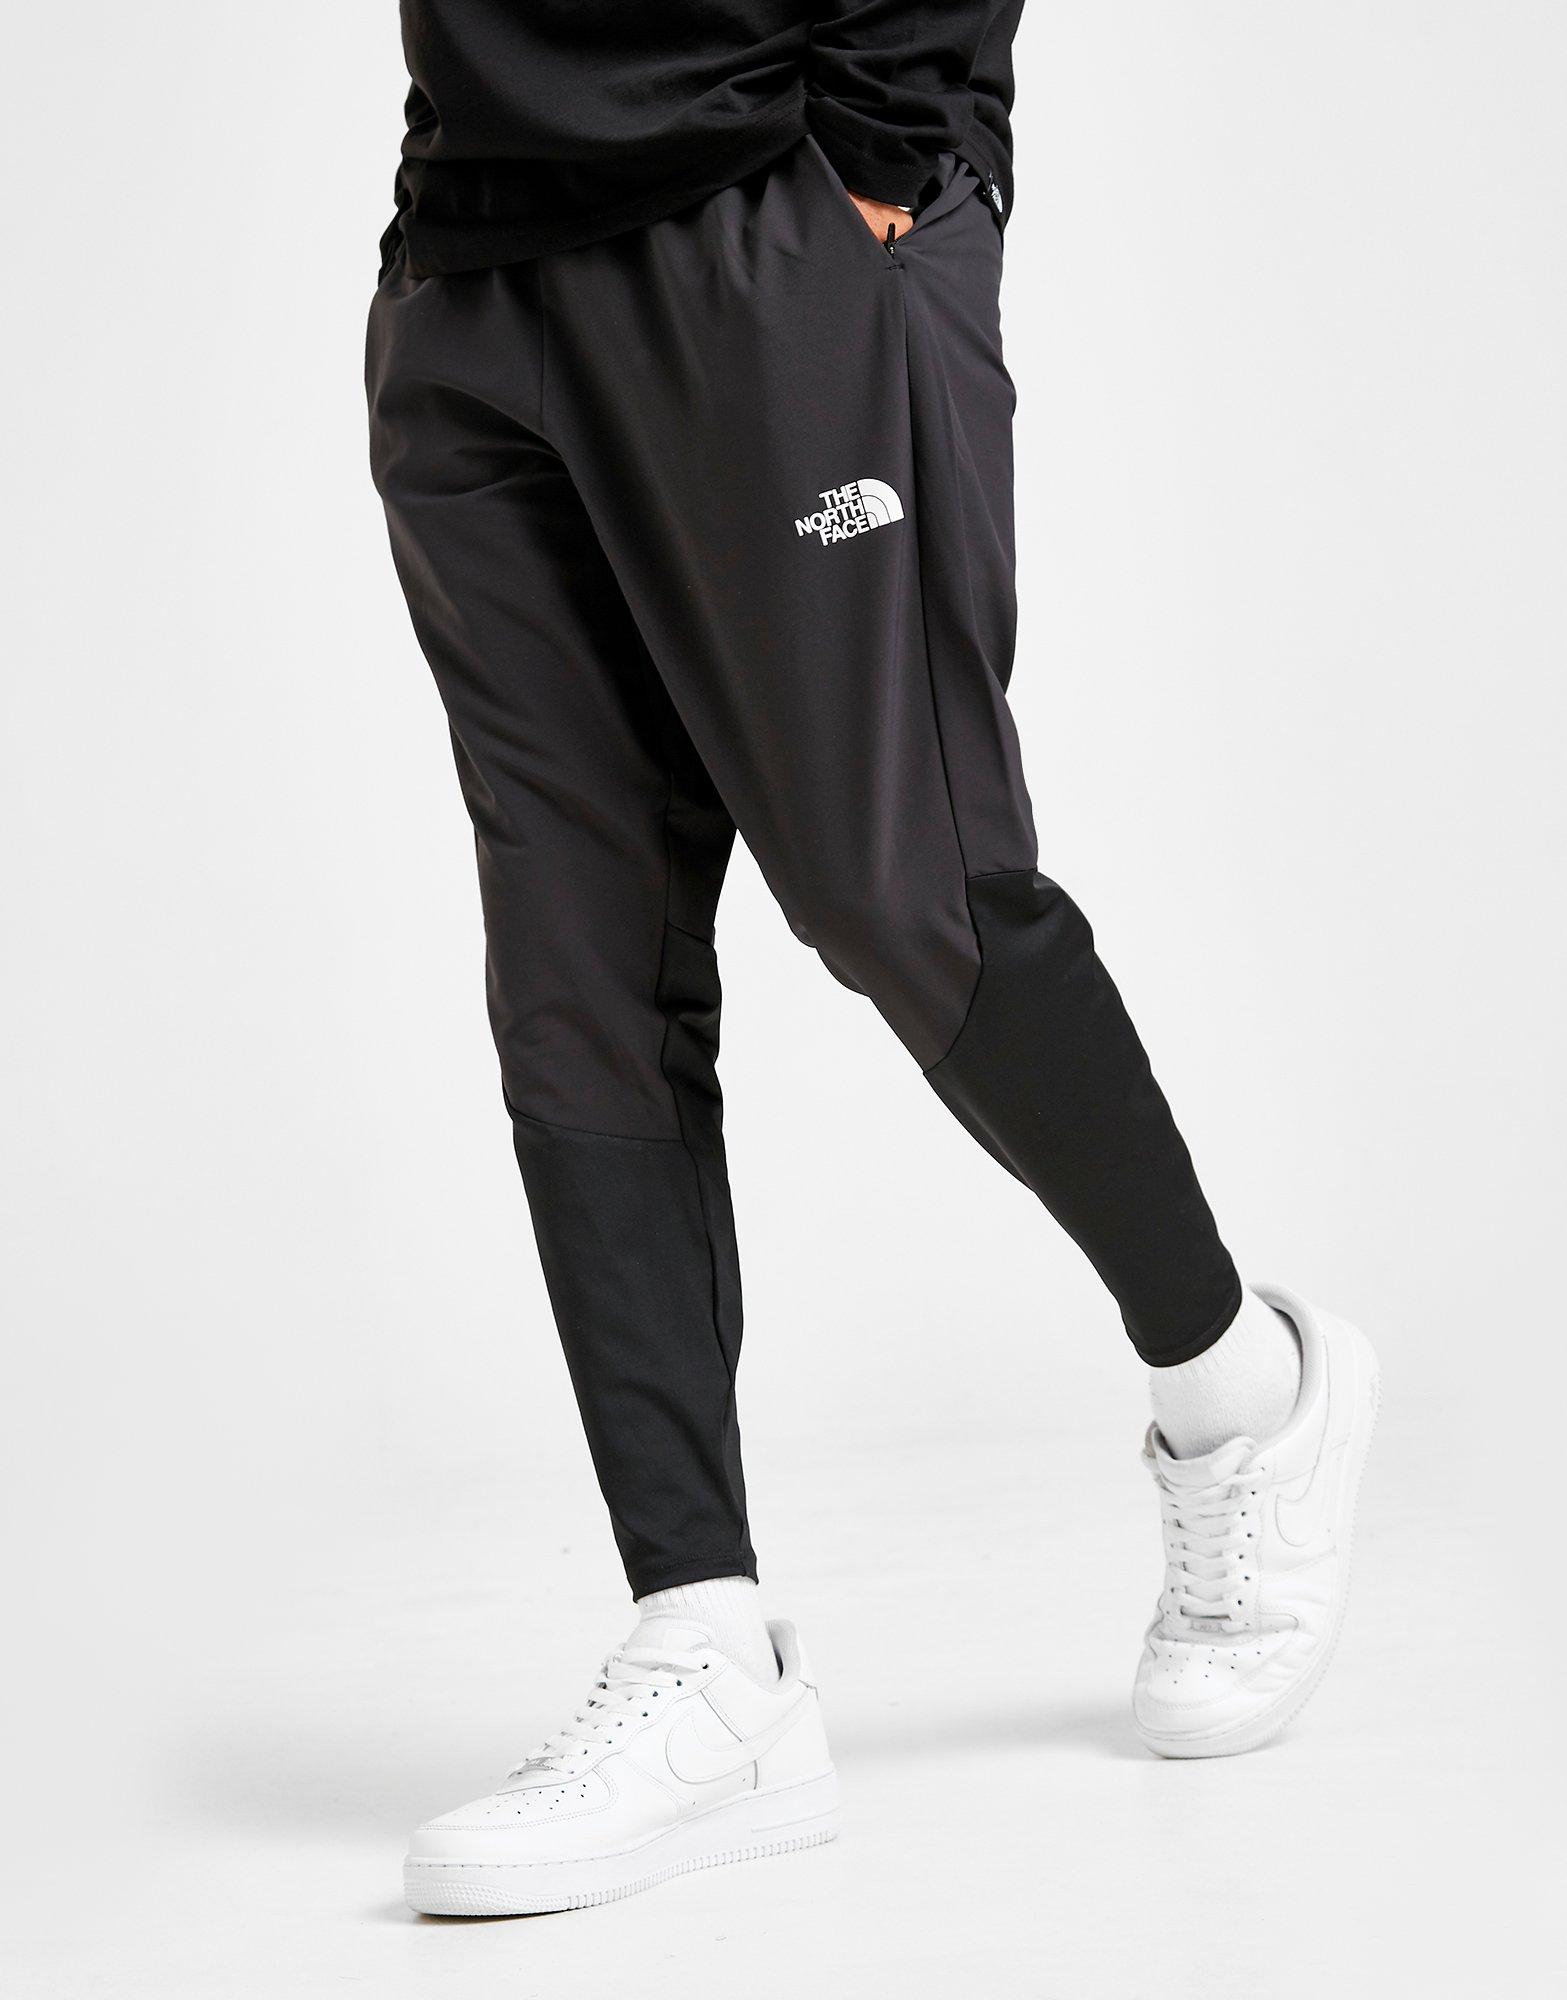 Compra The North Face pantalón de chándal Hybrid en Negro